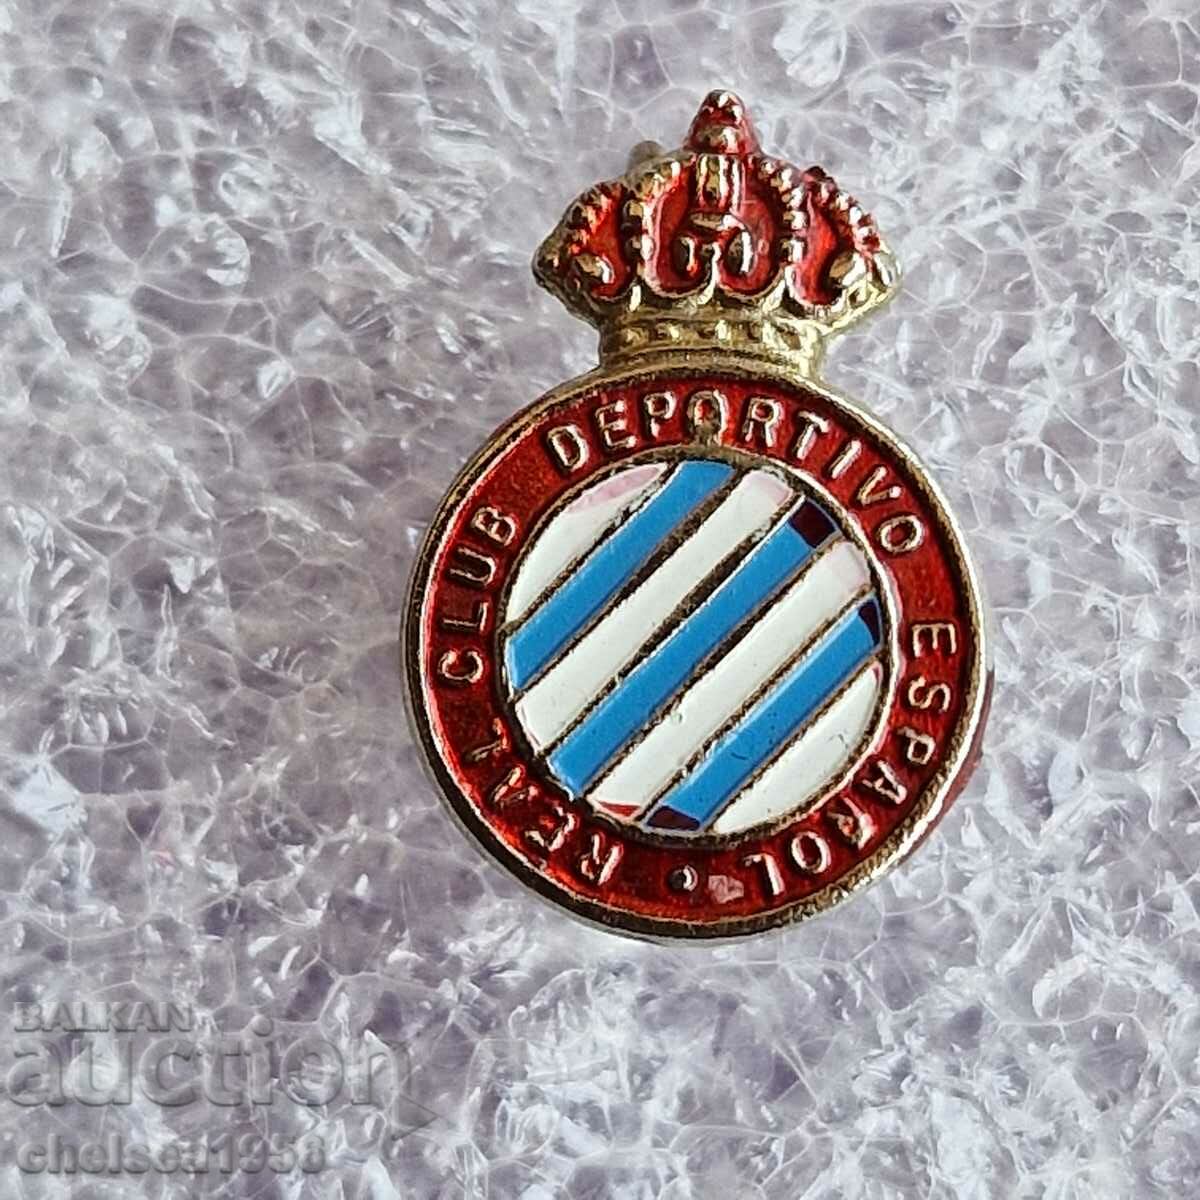 Espanol Espana badge